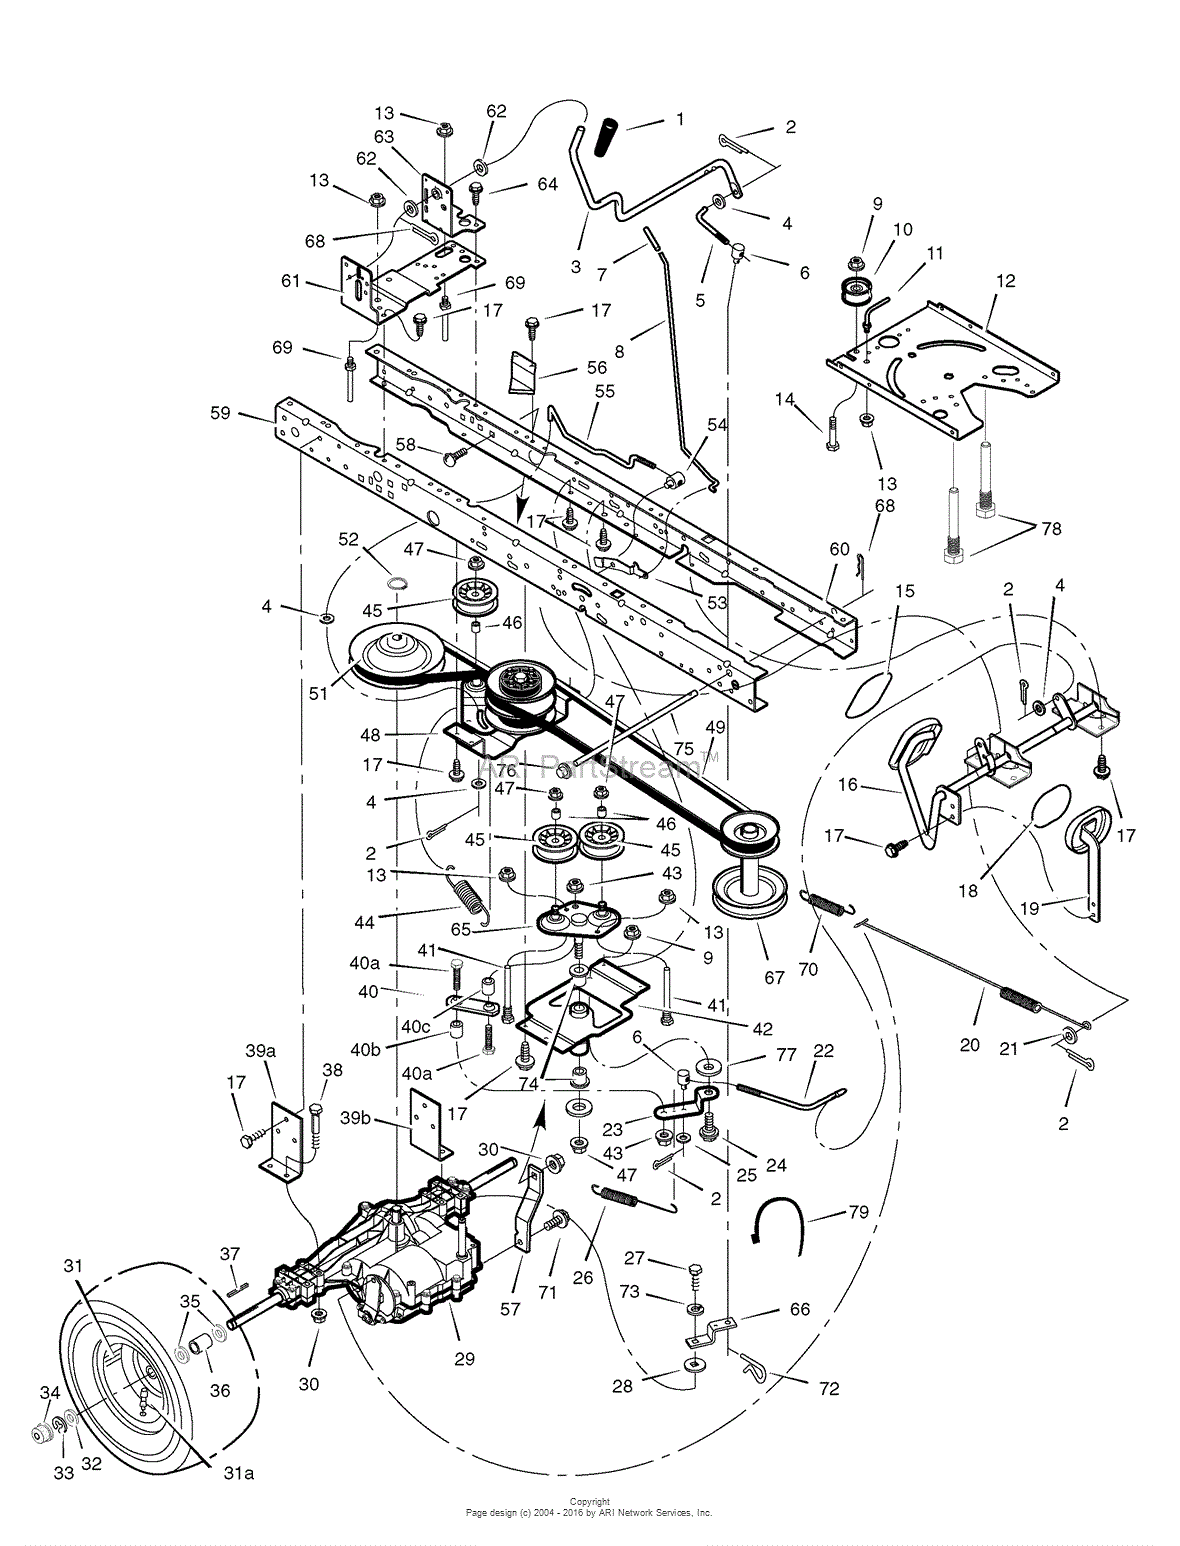 Diagram Simplicity Lawn Tractor Parts Diagrams Mydiagramonline